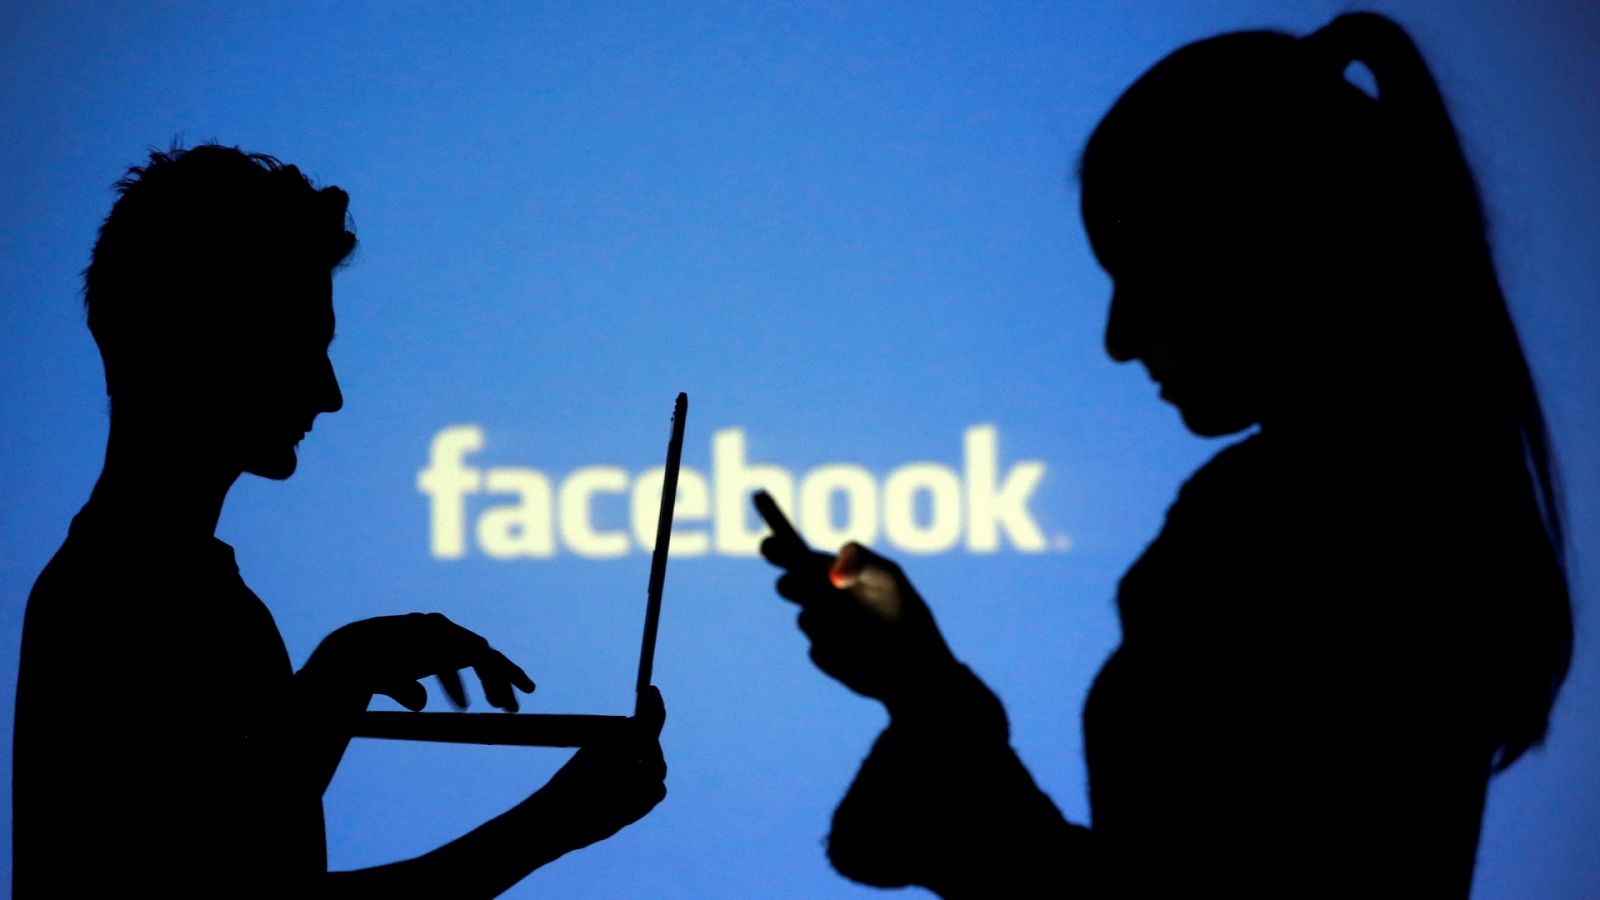 Siluetas de dos personas usando un ordenador y un teléfono móvil frente a una pantalla con el logo de Facebook